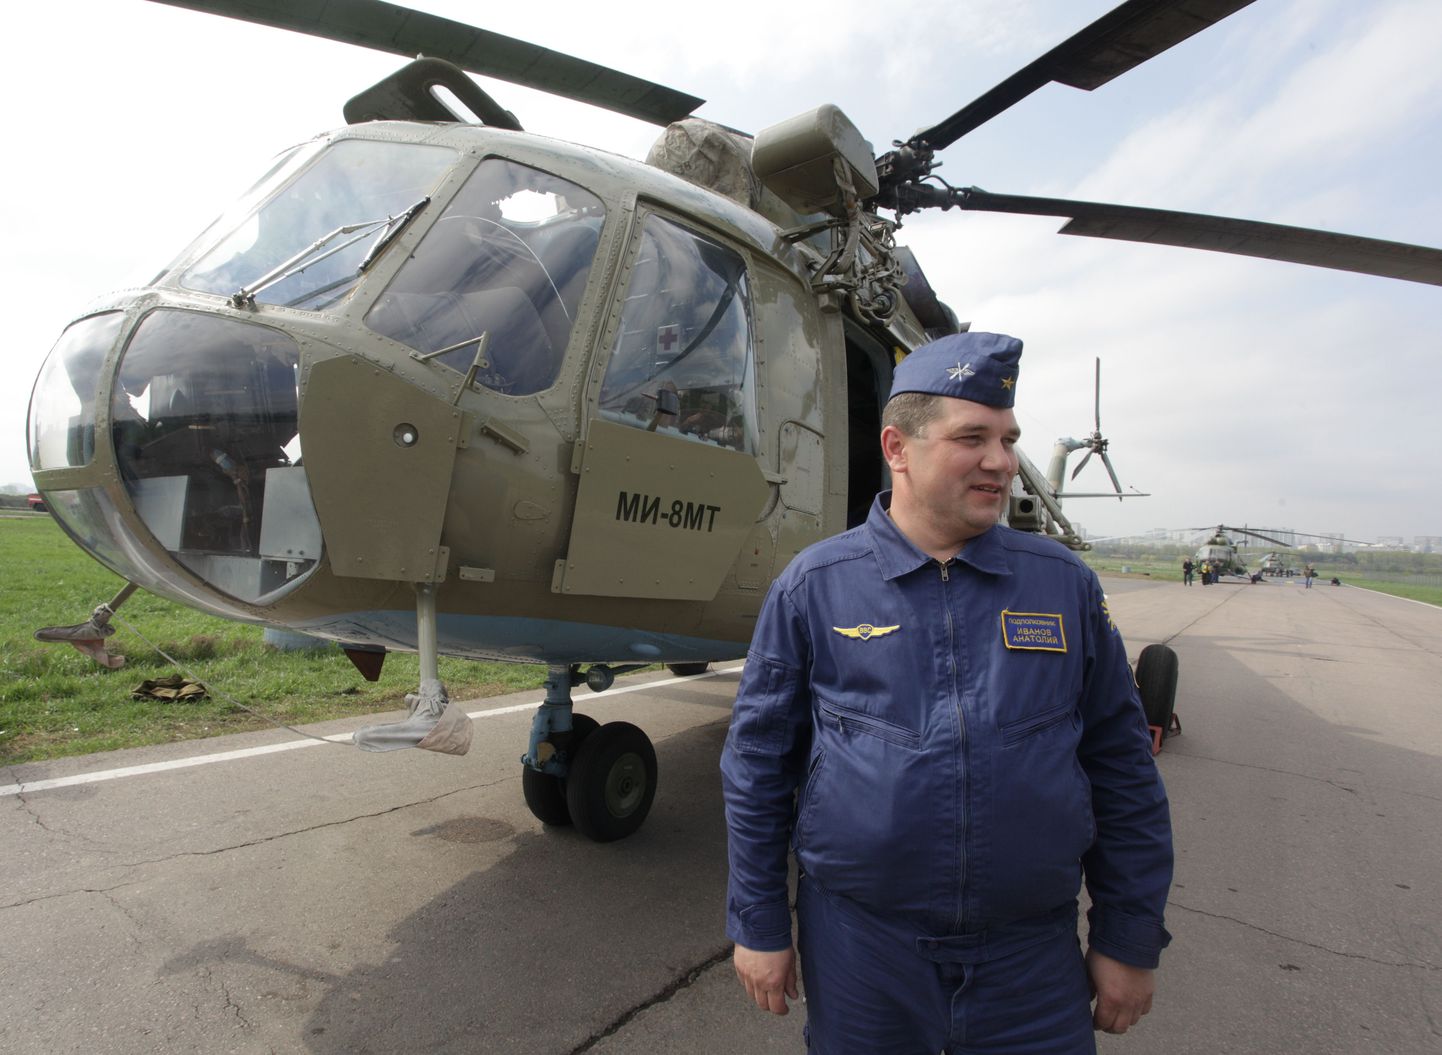 Vene helikopter MI-8MT